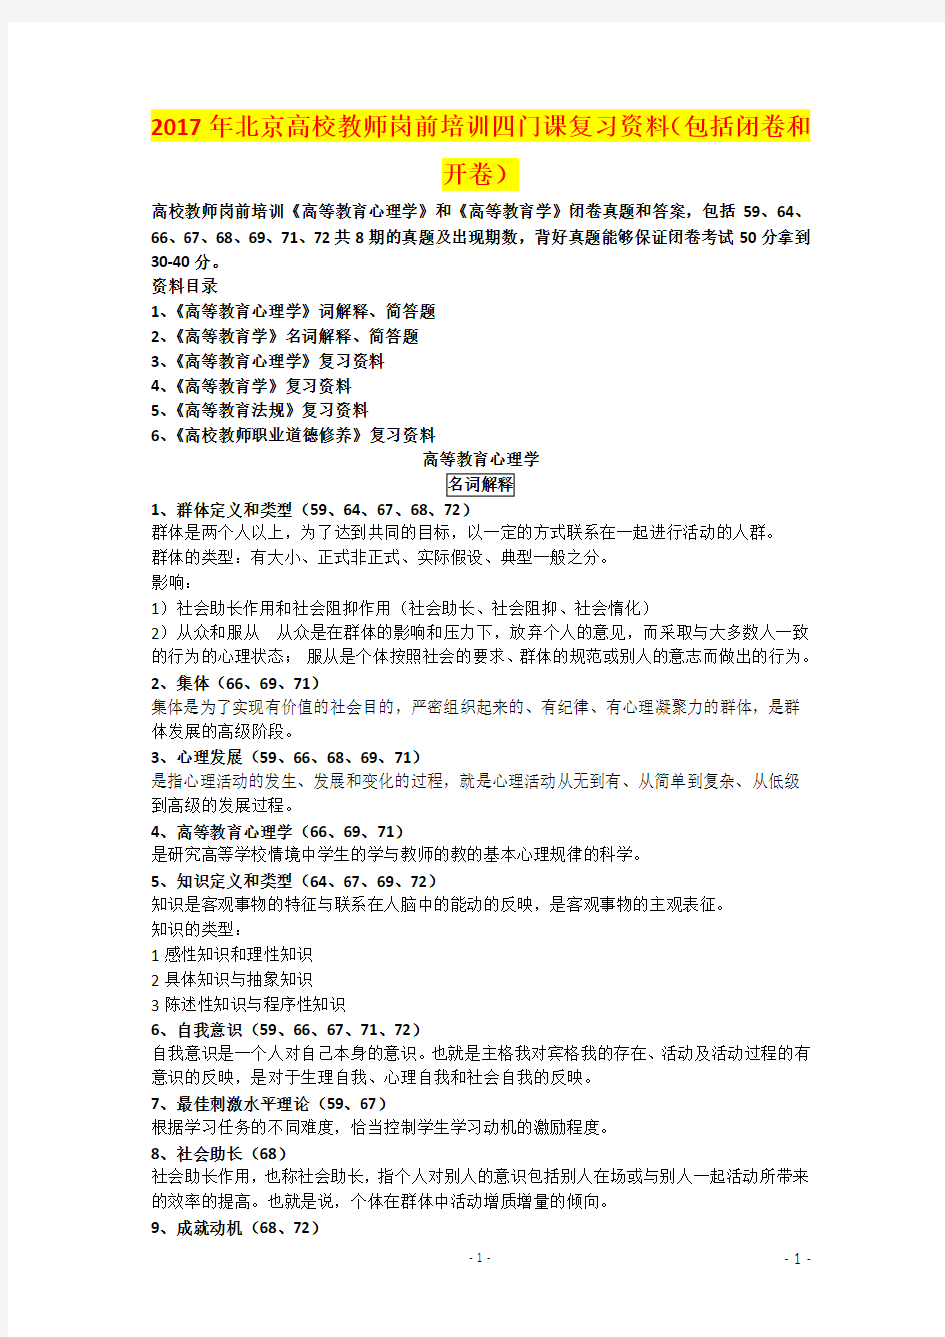 2017年北京高校教师岗前培训四门课复习资料(包括闭卷和开卷)